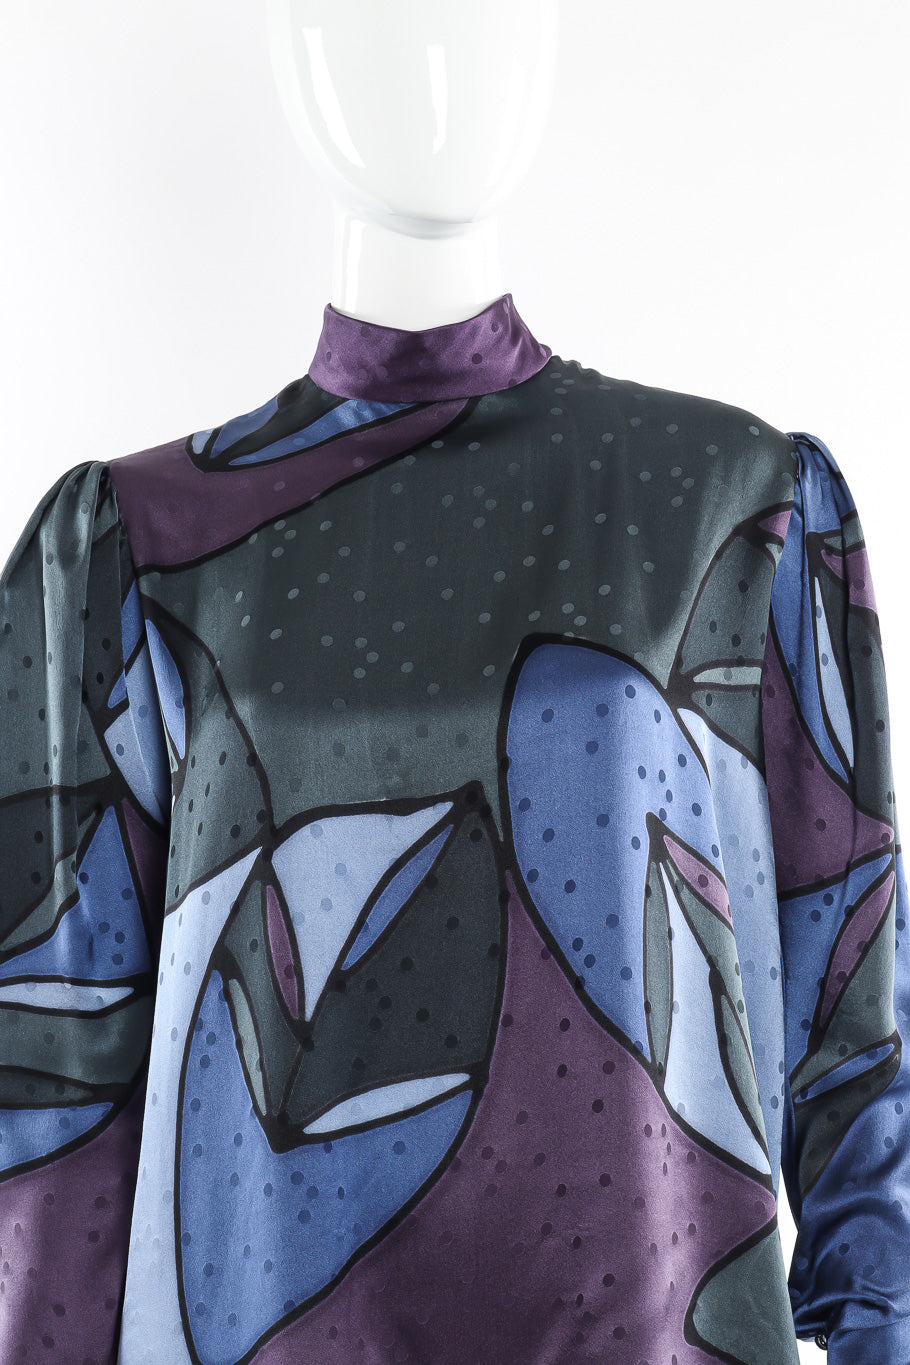 Silk blouse by Sansappelle Collections mannequin neck close @recessla